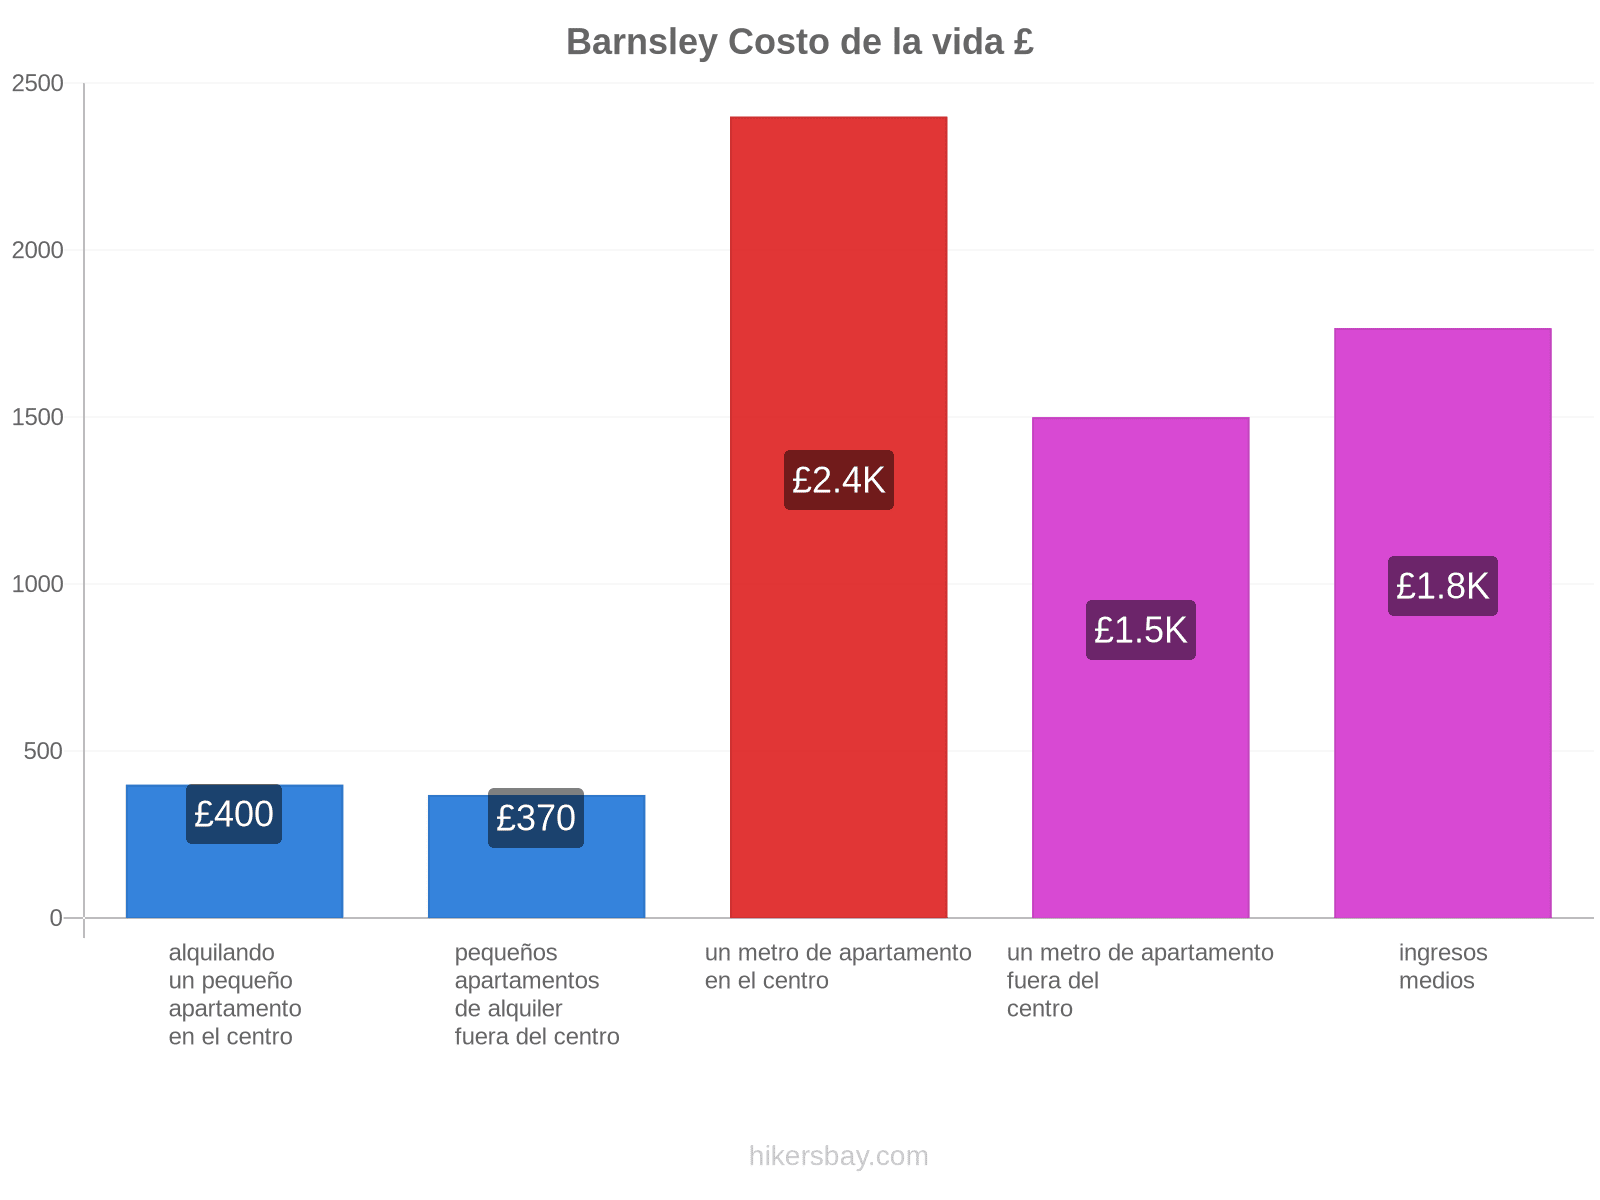 Barnsley costo de la vida hikersbay.com